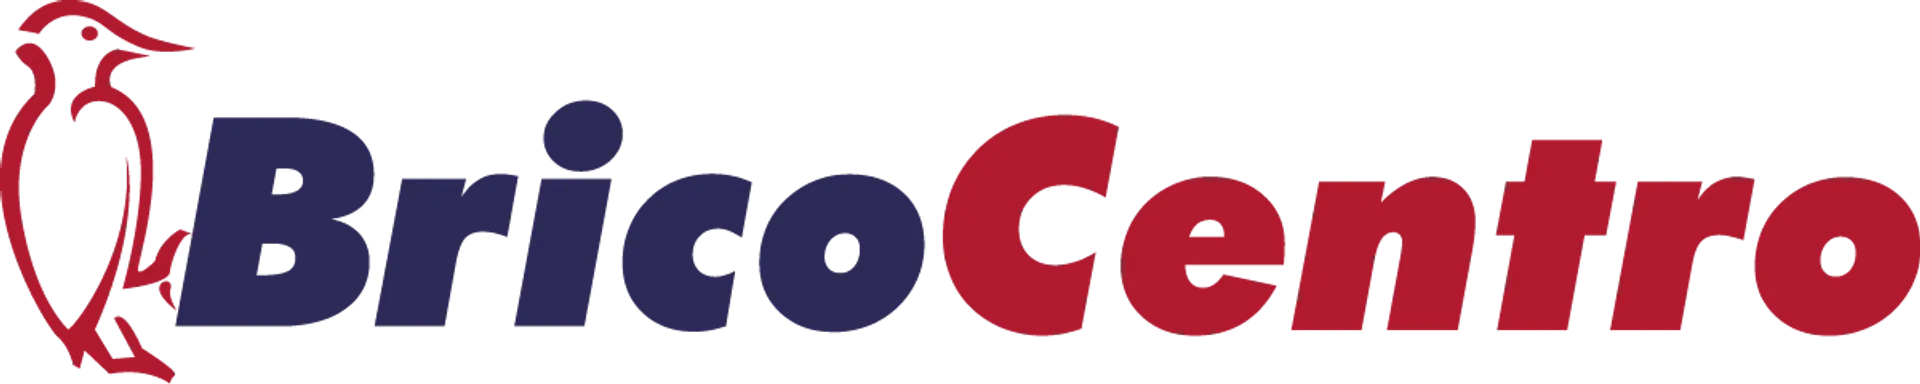 BRICOCENTRO logo de catálogo